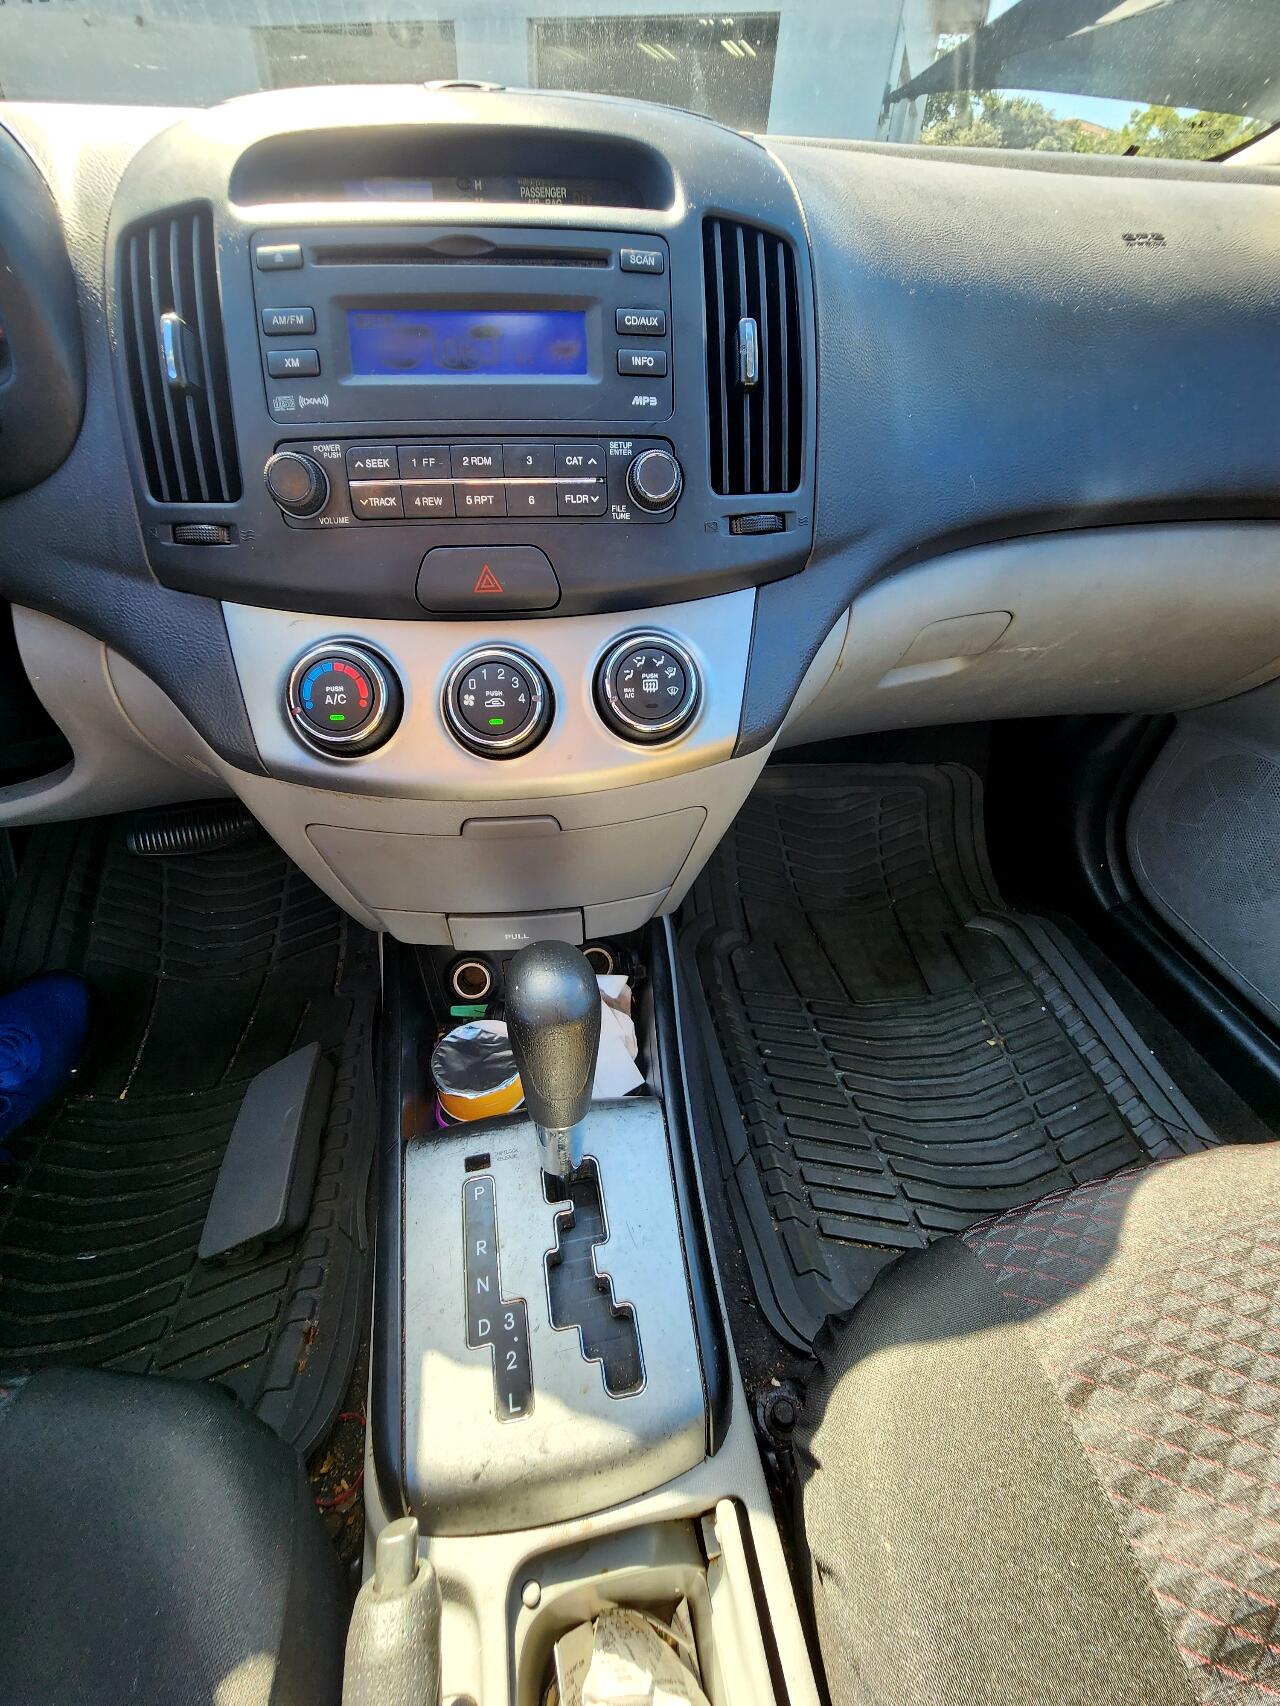 2010 HYUNDAI Elantra Sedan - $2,499